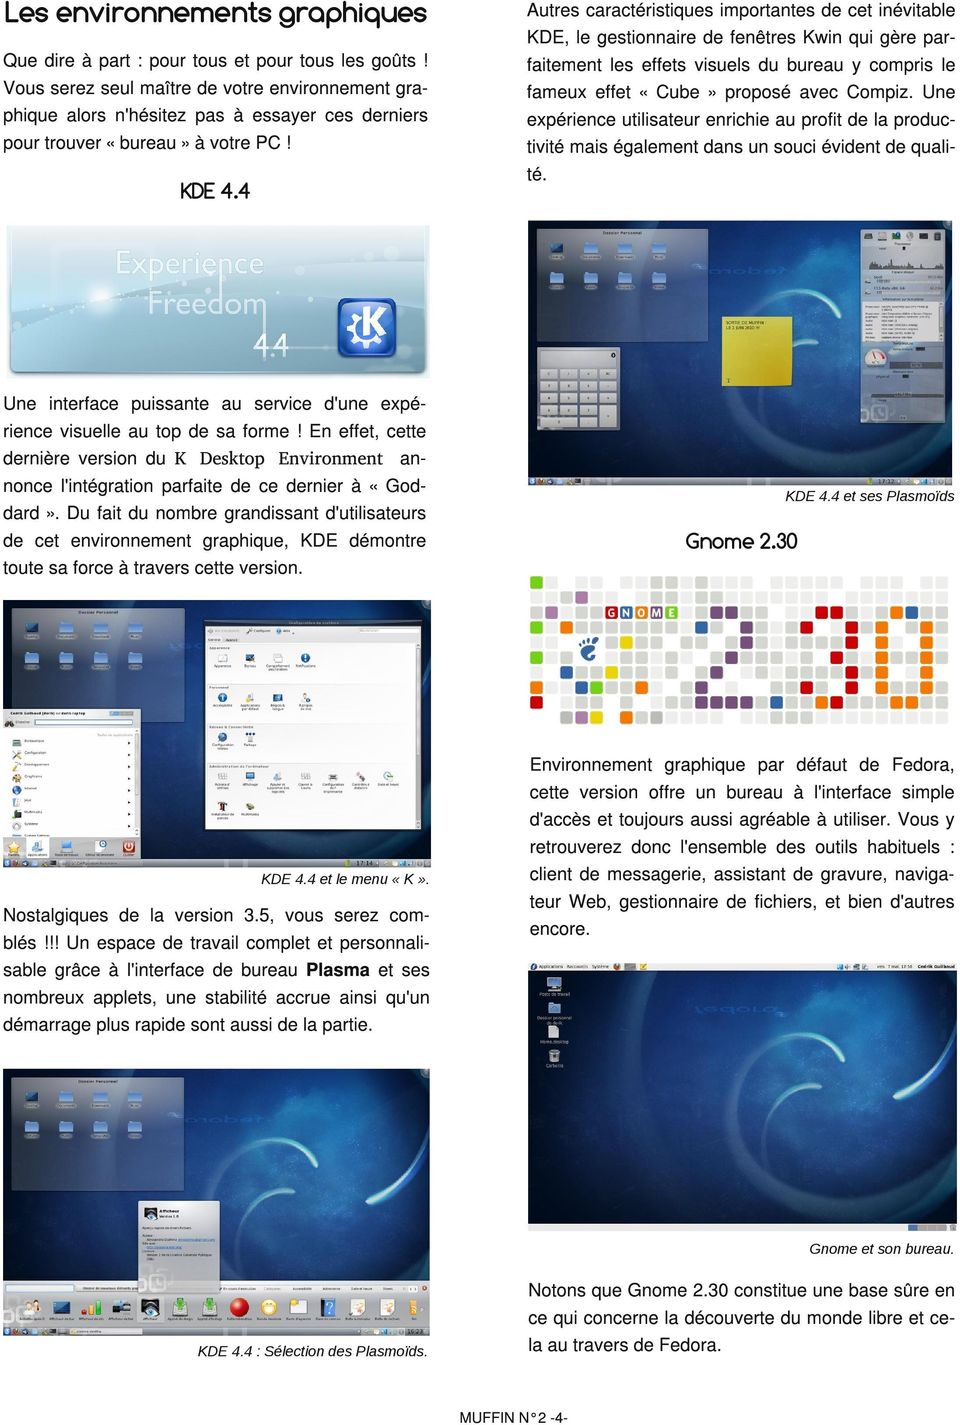 4 Autres caractéristiques importantes de cet inévitable KDE, le gestionnaire de fenêtres Kwin qui gère parfaitement les effets visuels du bureau y compris le fameux effet «Cube» proposé avec Compiz.